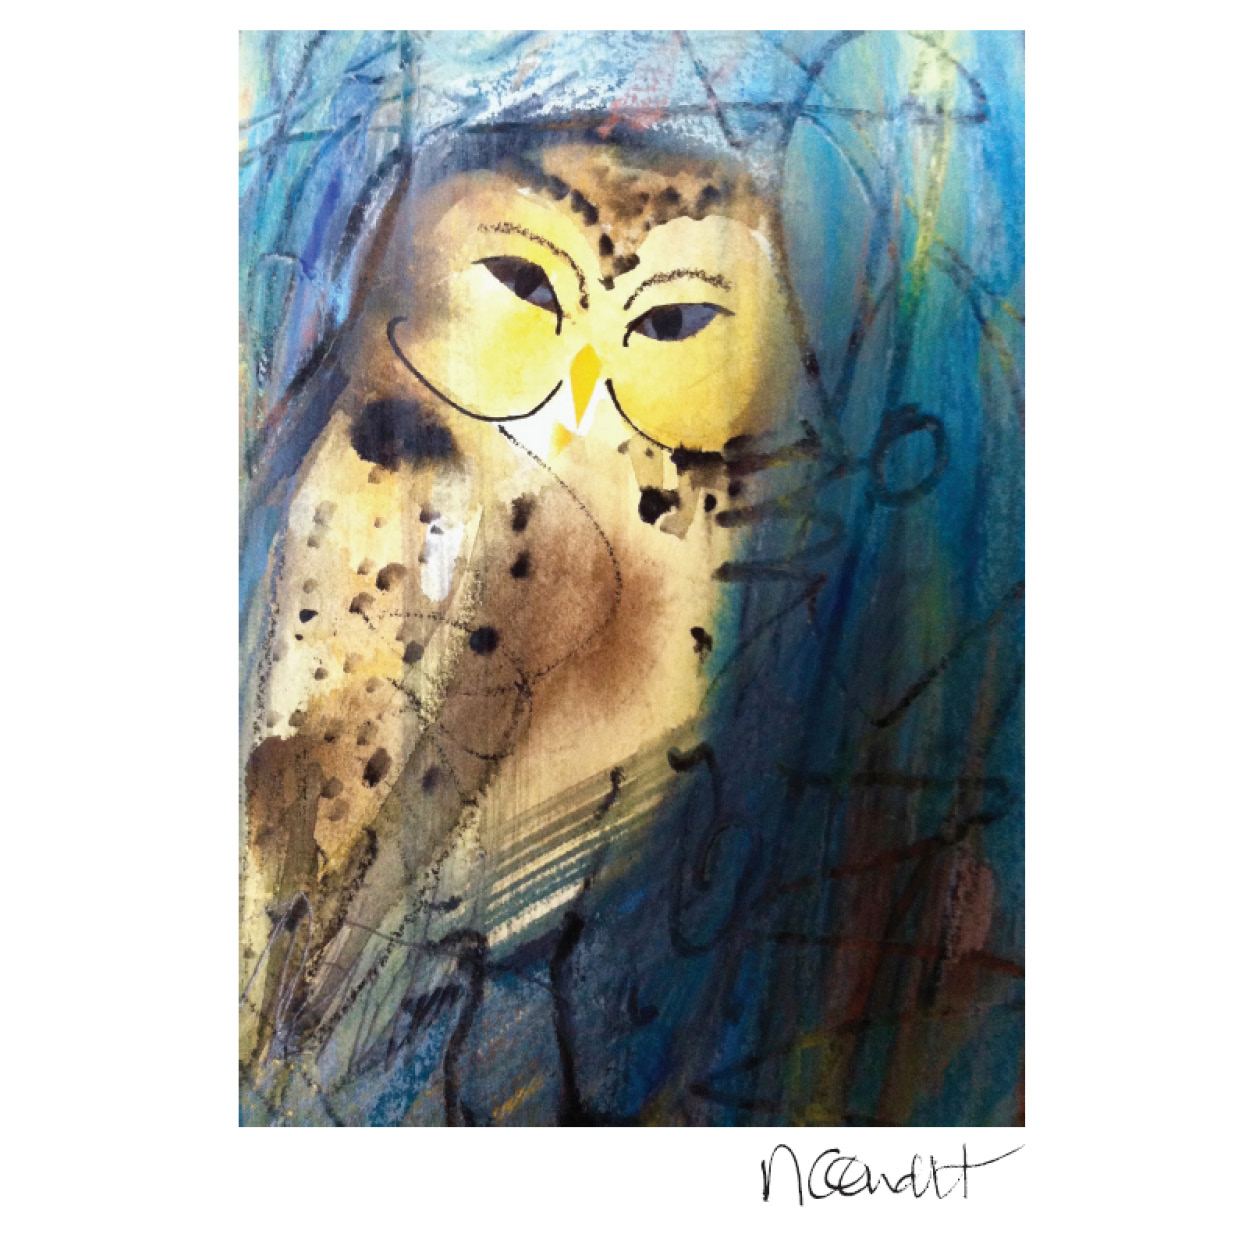 An art piece of a golden and brown owl.